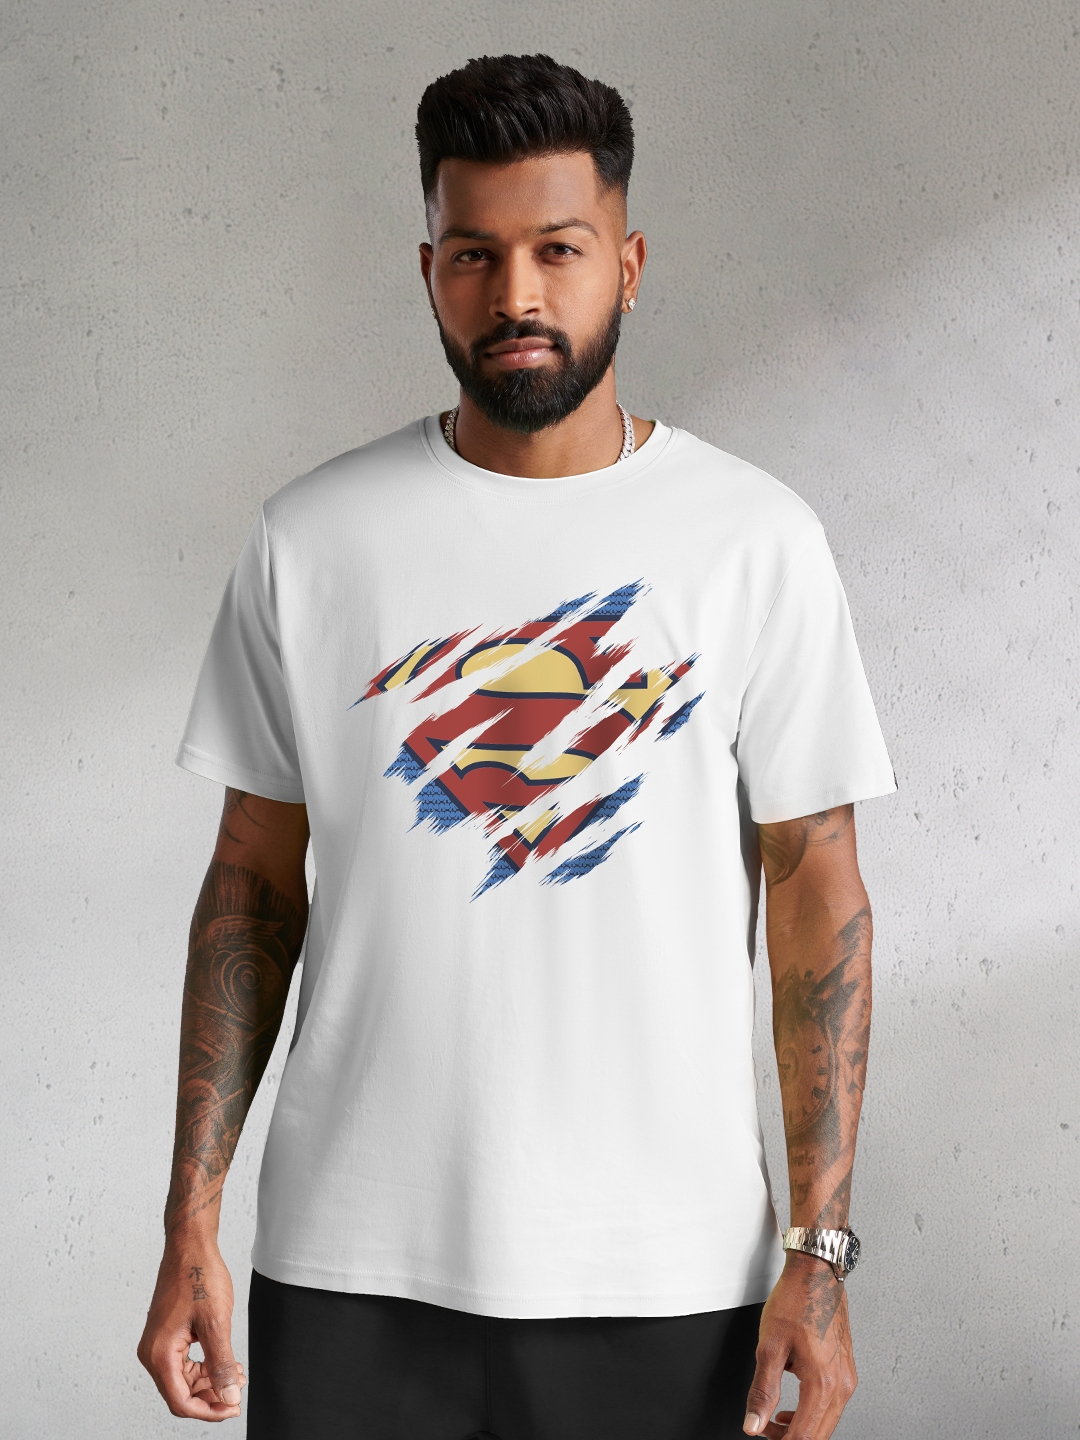 Men's Superman: The Classic Symbol T-Shirt